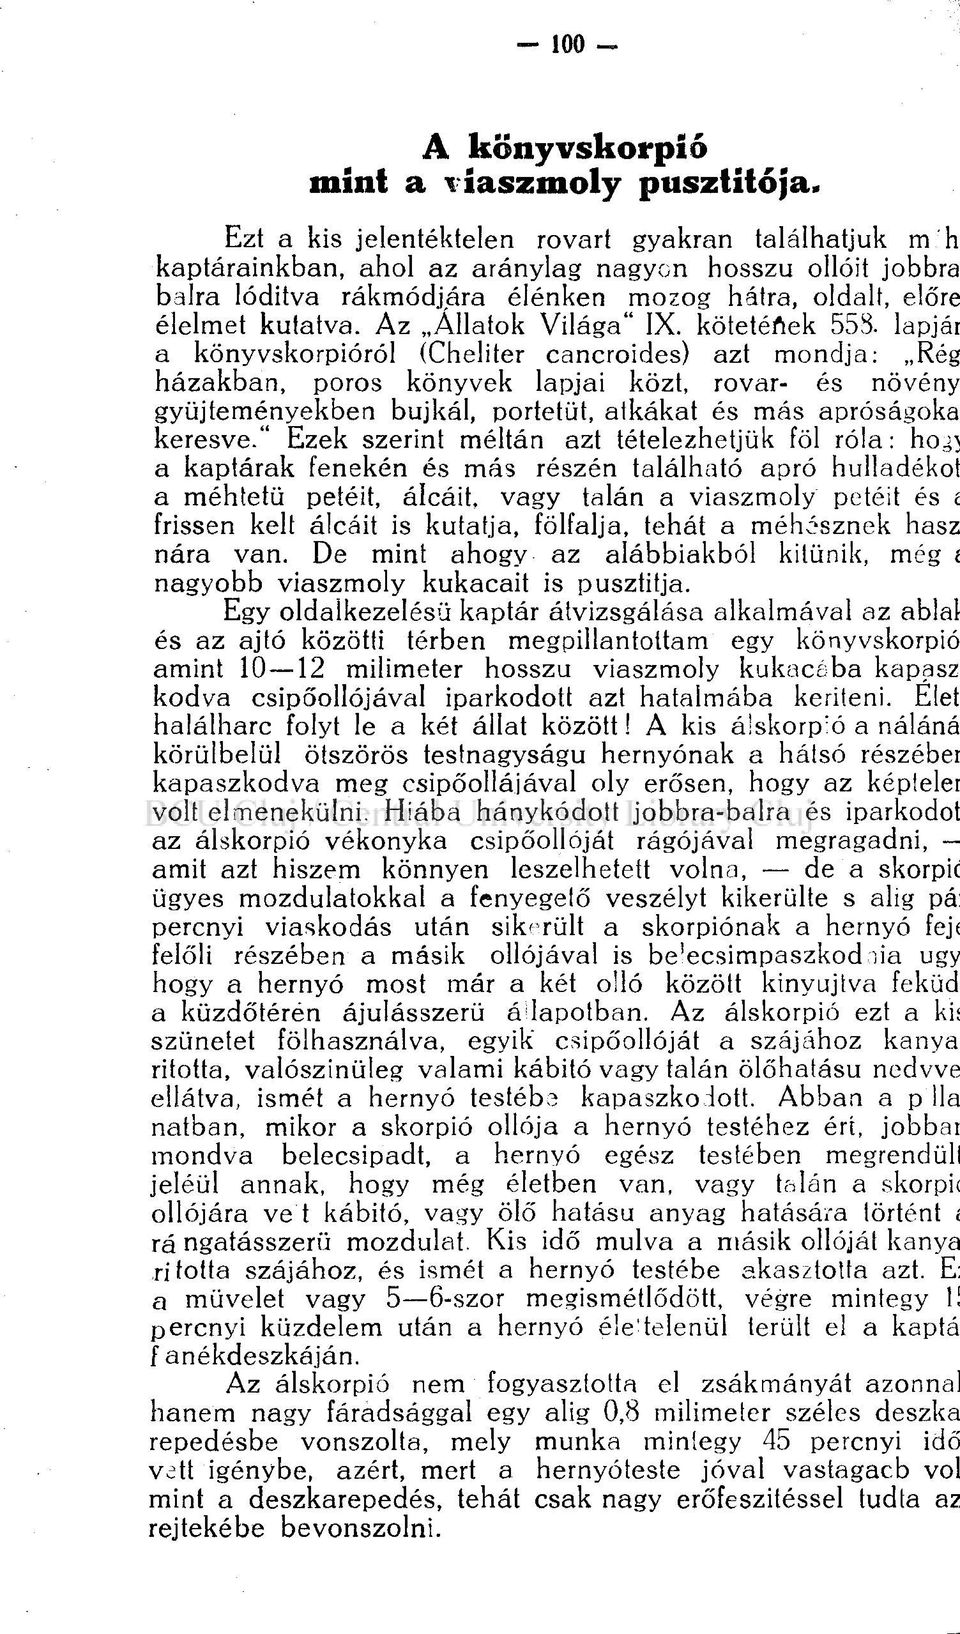 Az Allatok Világa" IX. kötetéfiek 558.